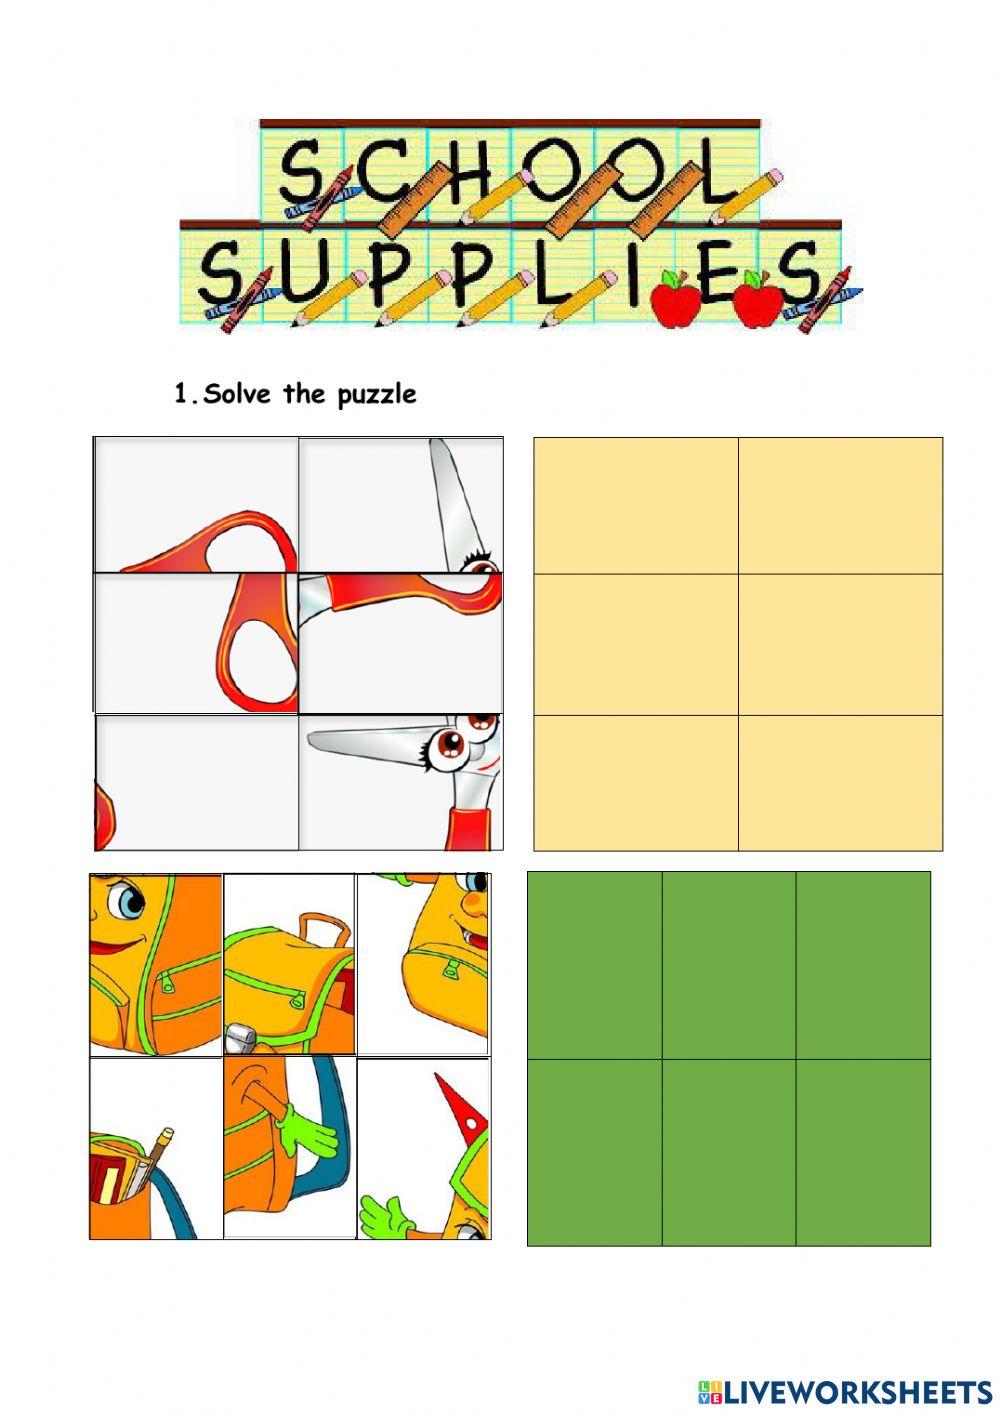 School supplies puzzle